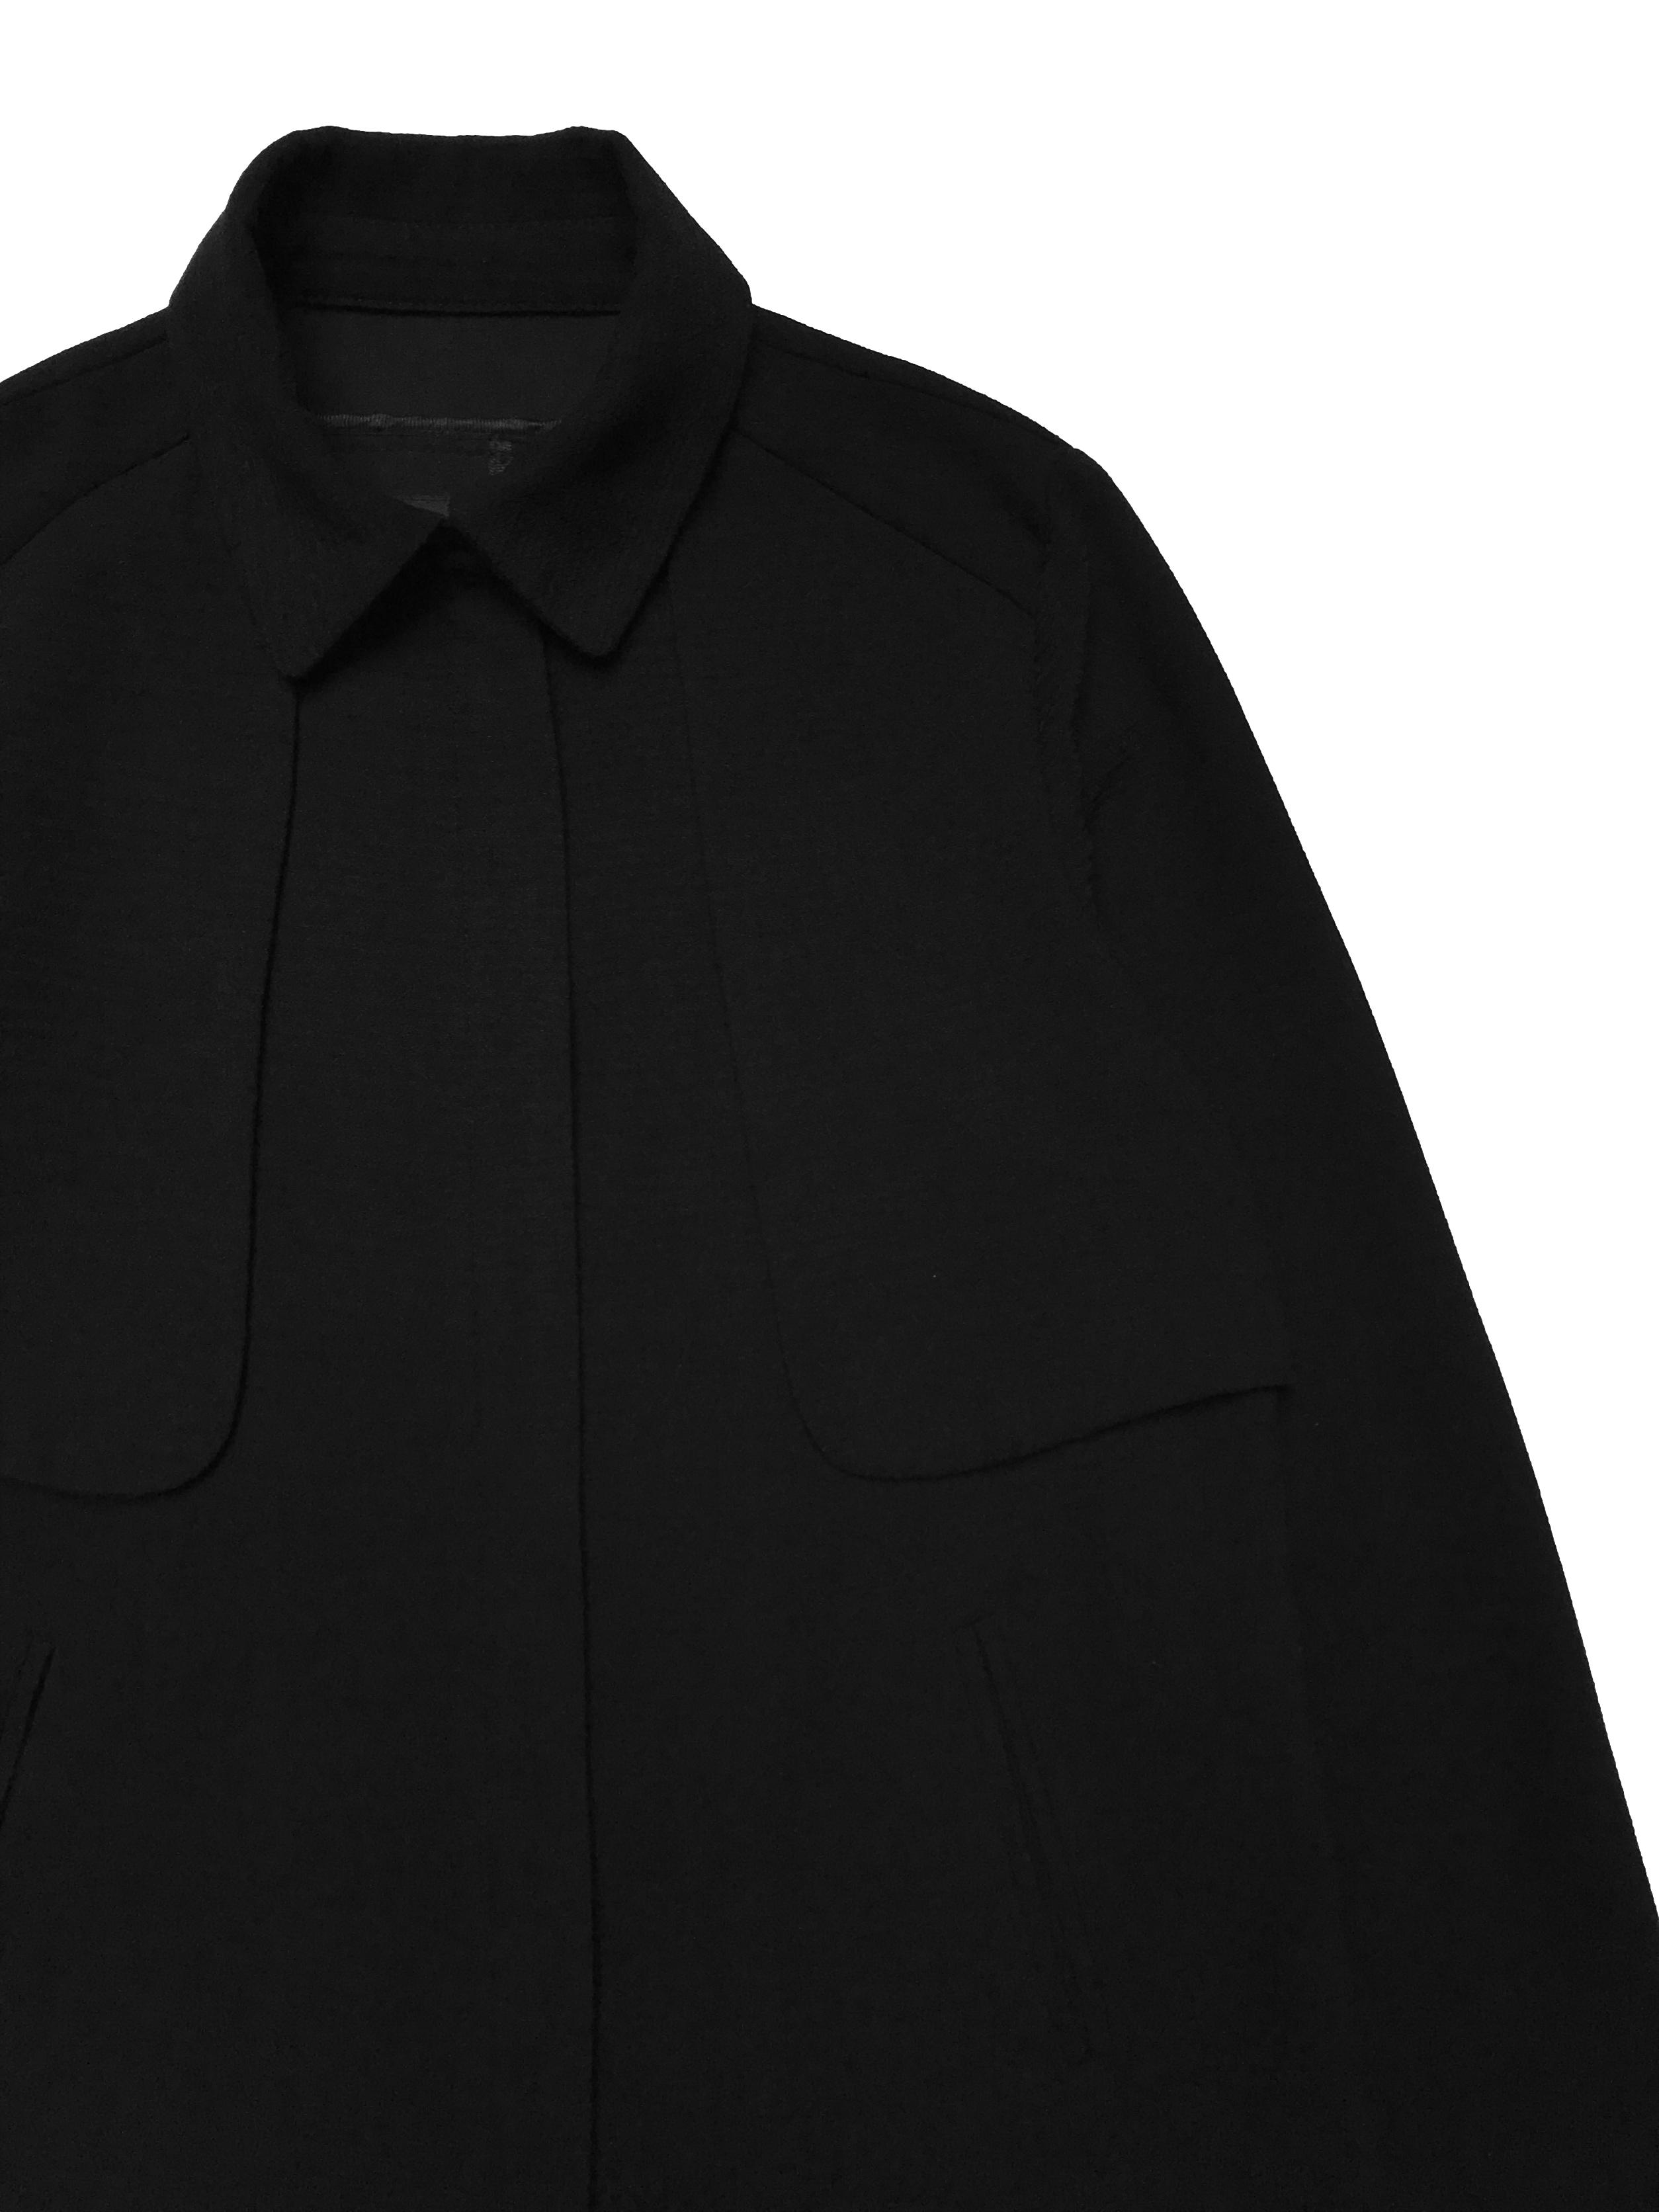 Casaca Malabar negra con textura, tiene cierre delantero, aplicaciones estilo capa en hombros y bolsillos laterales. Busto 96cm Largo 52cm 